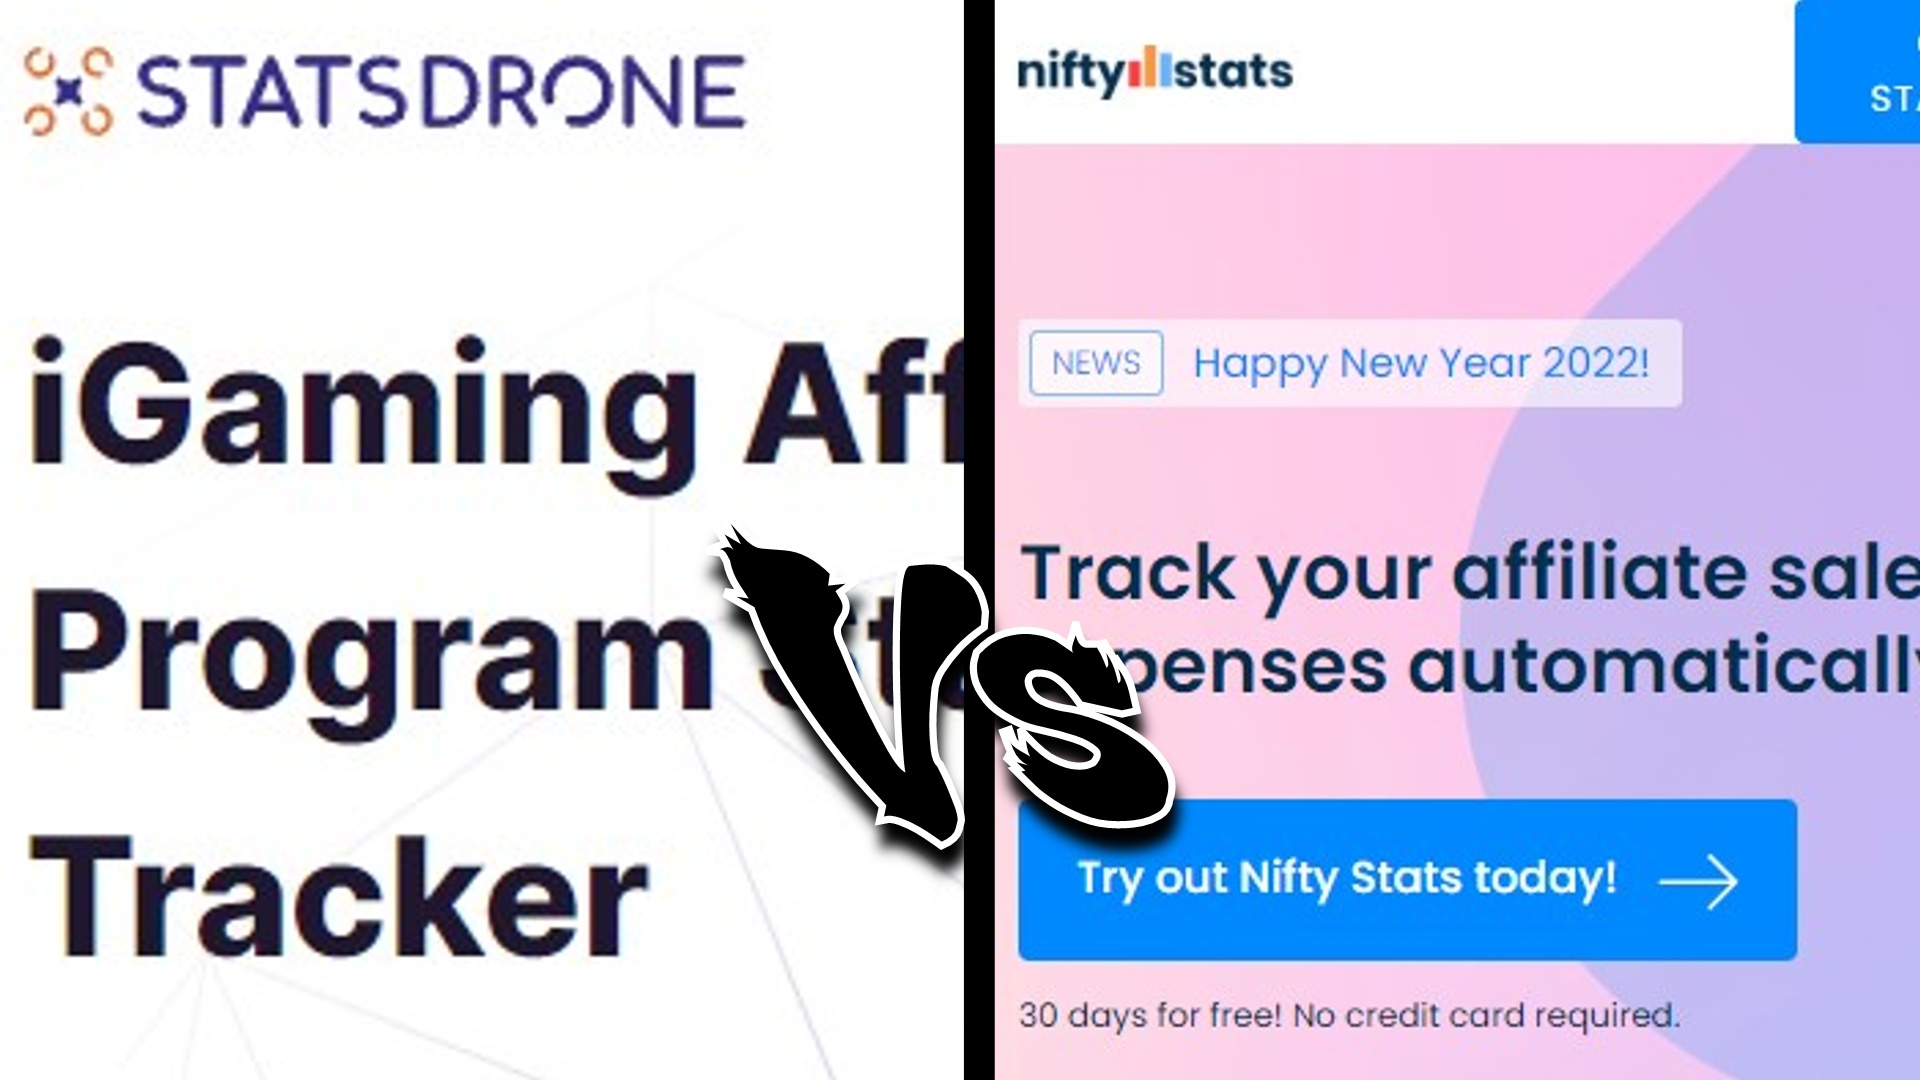 StatsDrone NiftyStats Comparison